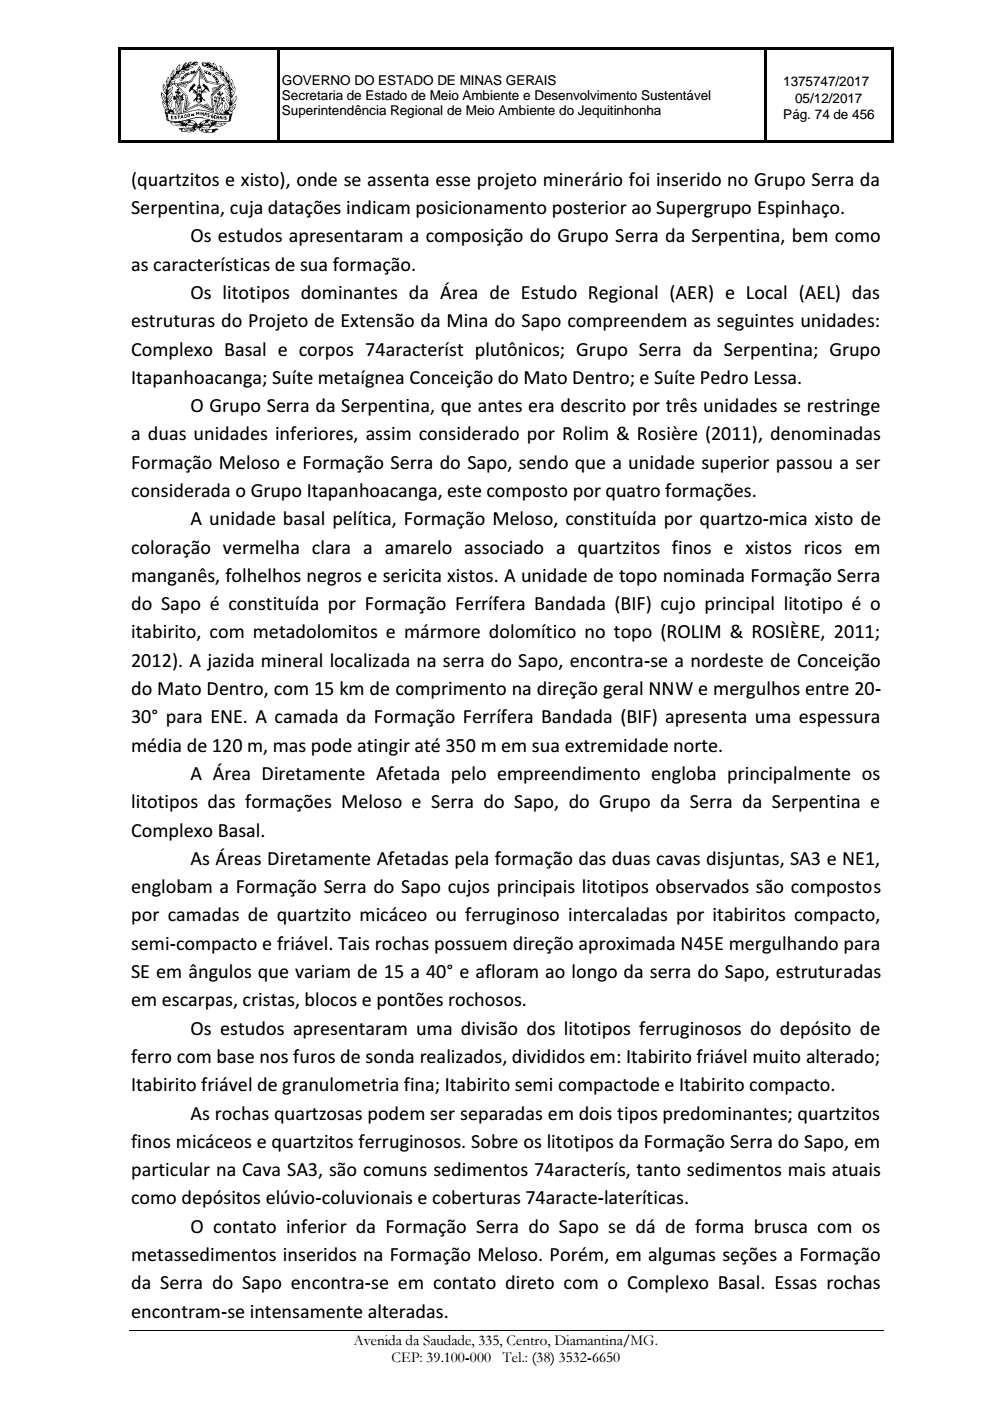 Page 74 from Parecer único da Secretaria de estado de Meio Ambiente e Desenvolvimento Sustentável (SEMAD)